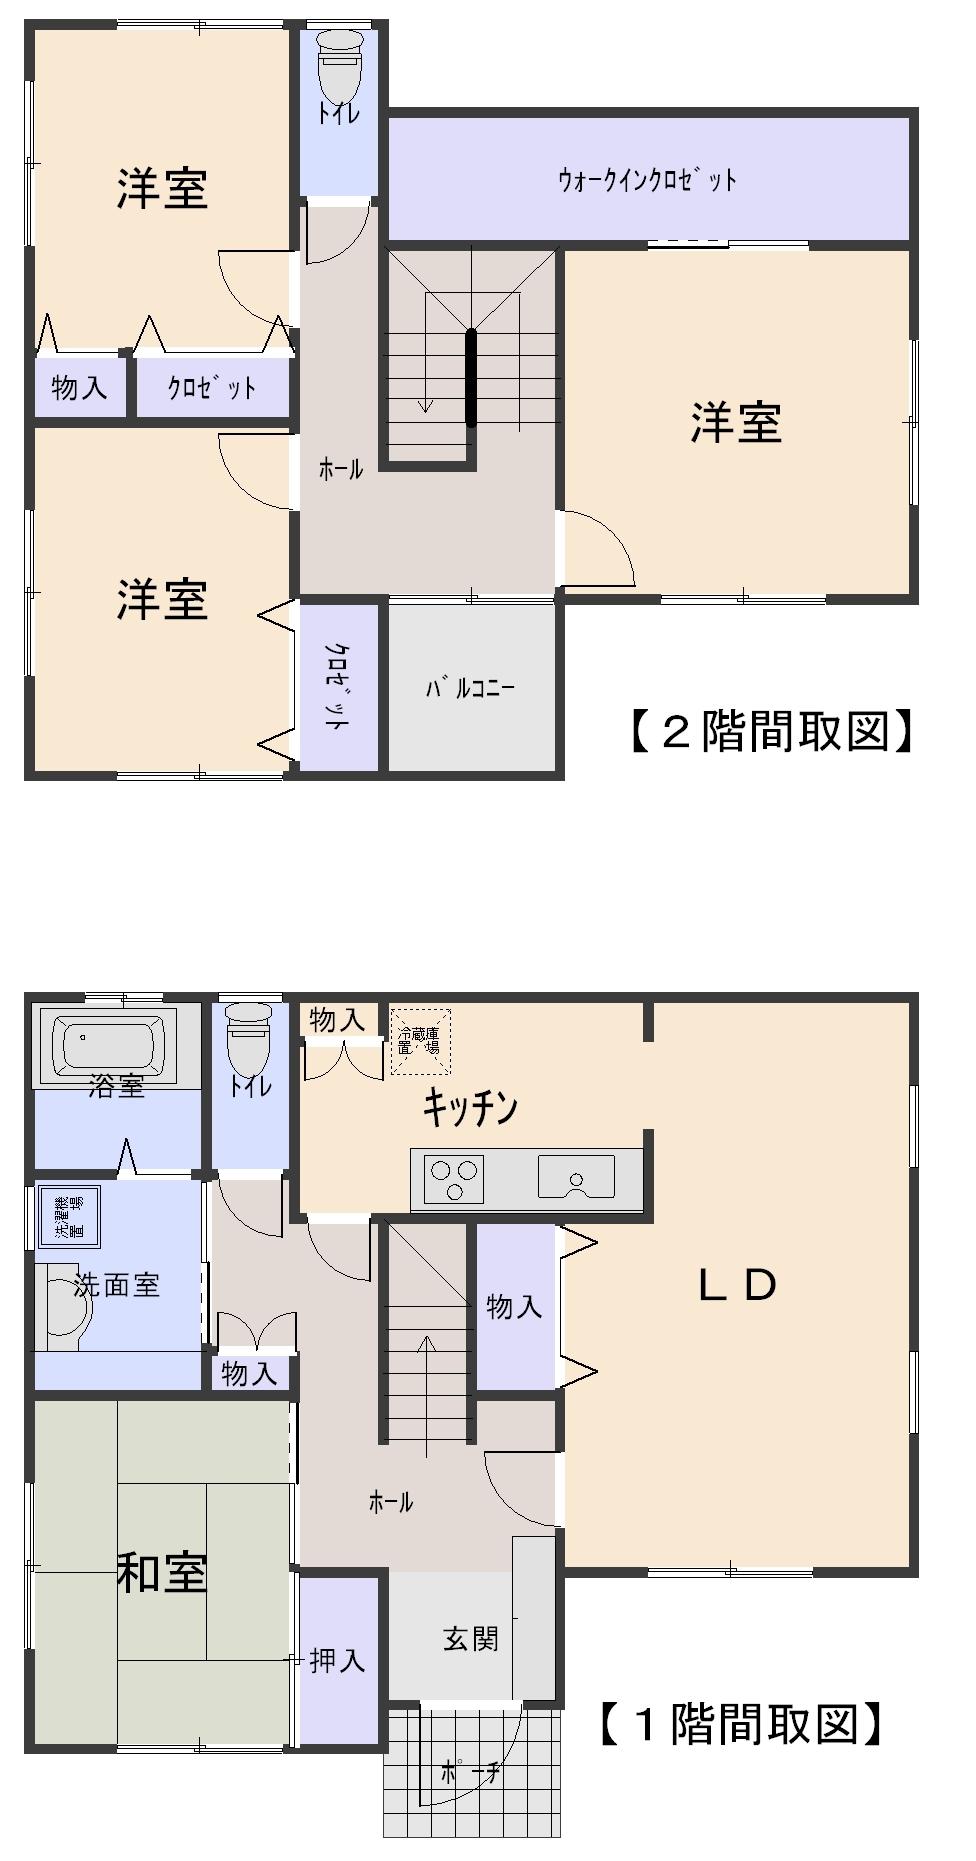 Floor plan. 25 million yen, 4LDK, Land area 203.49 sq m , Building area 118.41 sq m